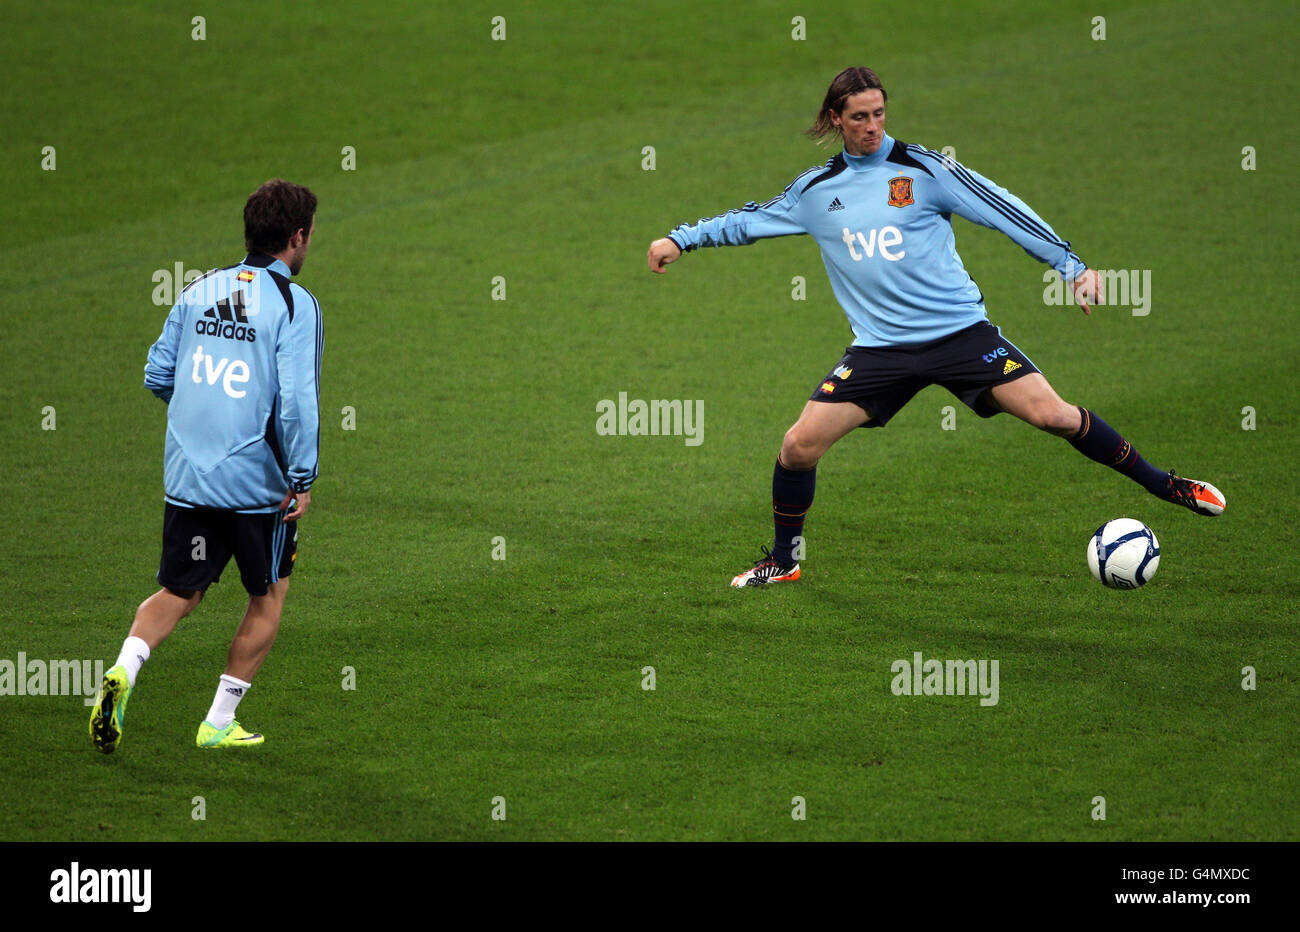 Football - match amical - France/Espagne - Espagne - Session de formation au stade de Wembley Banque D'Images